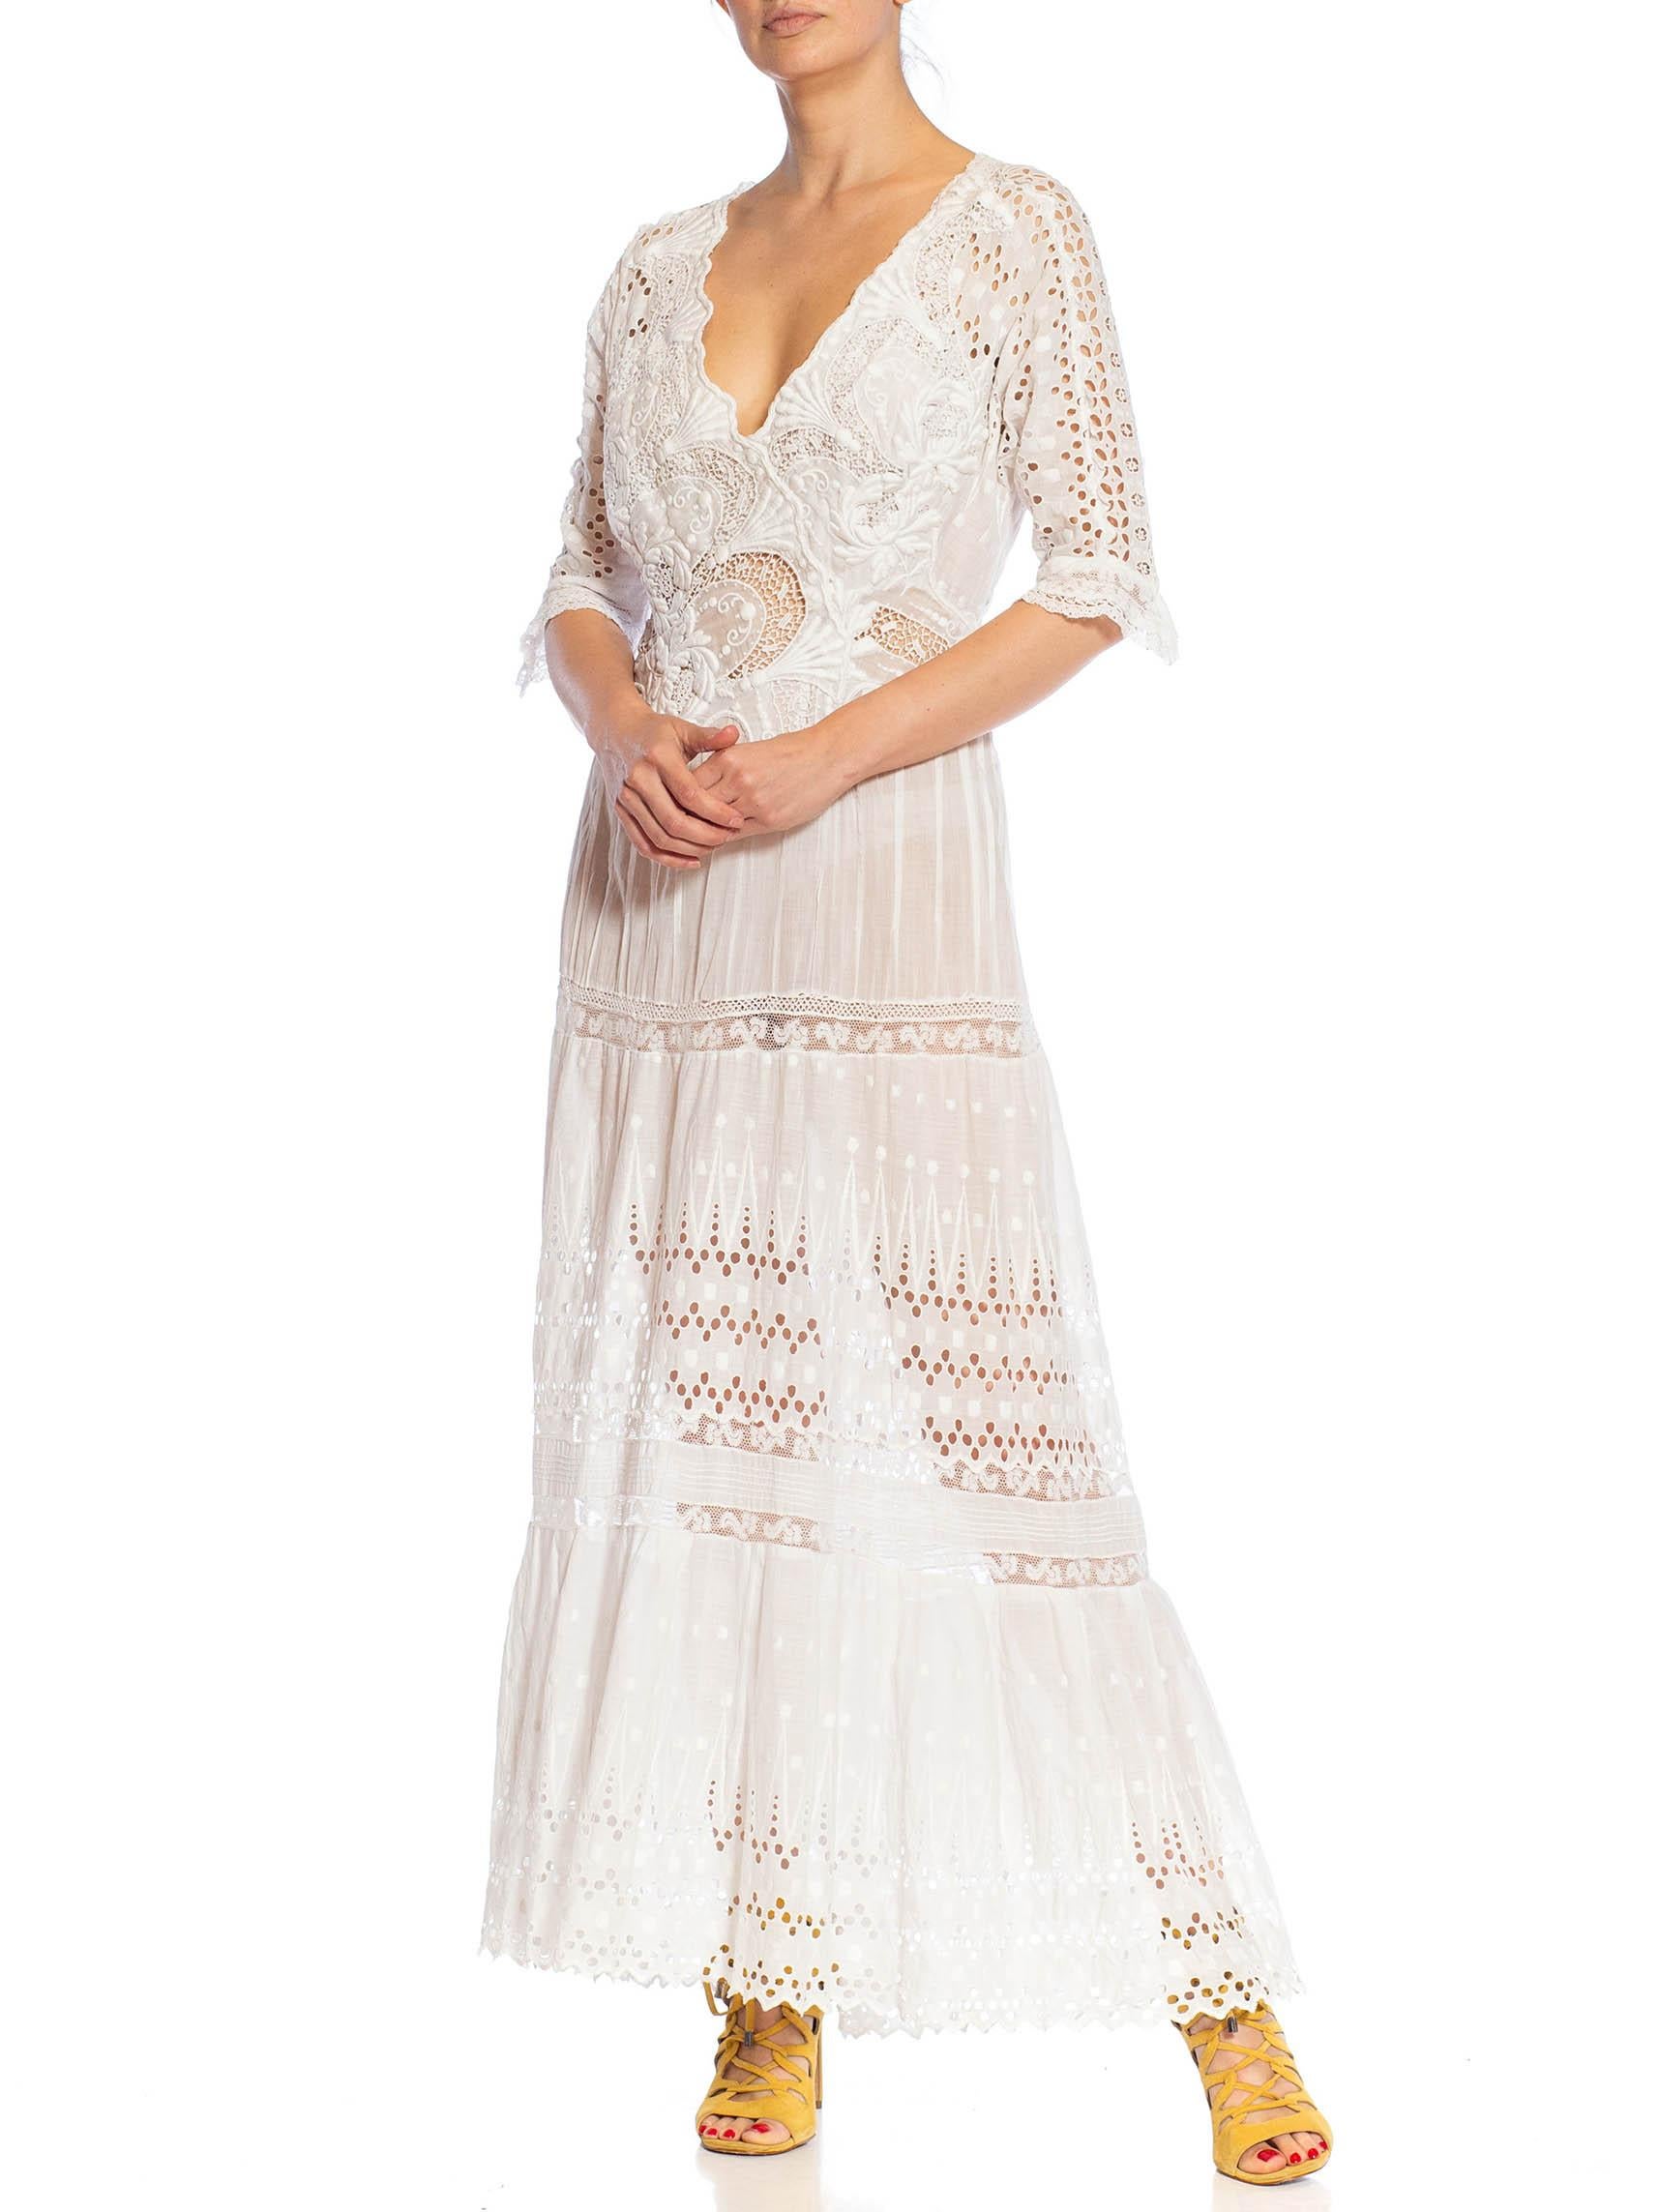 Women's MORPHEW ATELIER White Organic Cotton Antique Lace Dress For Sale